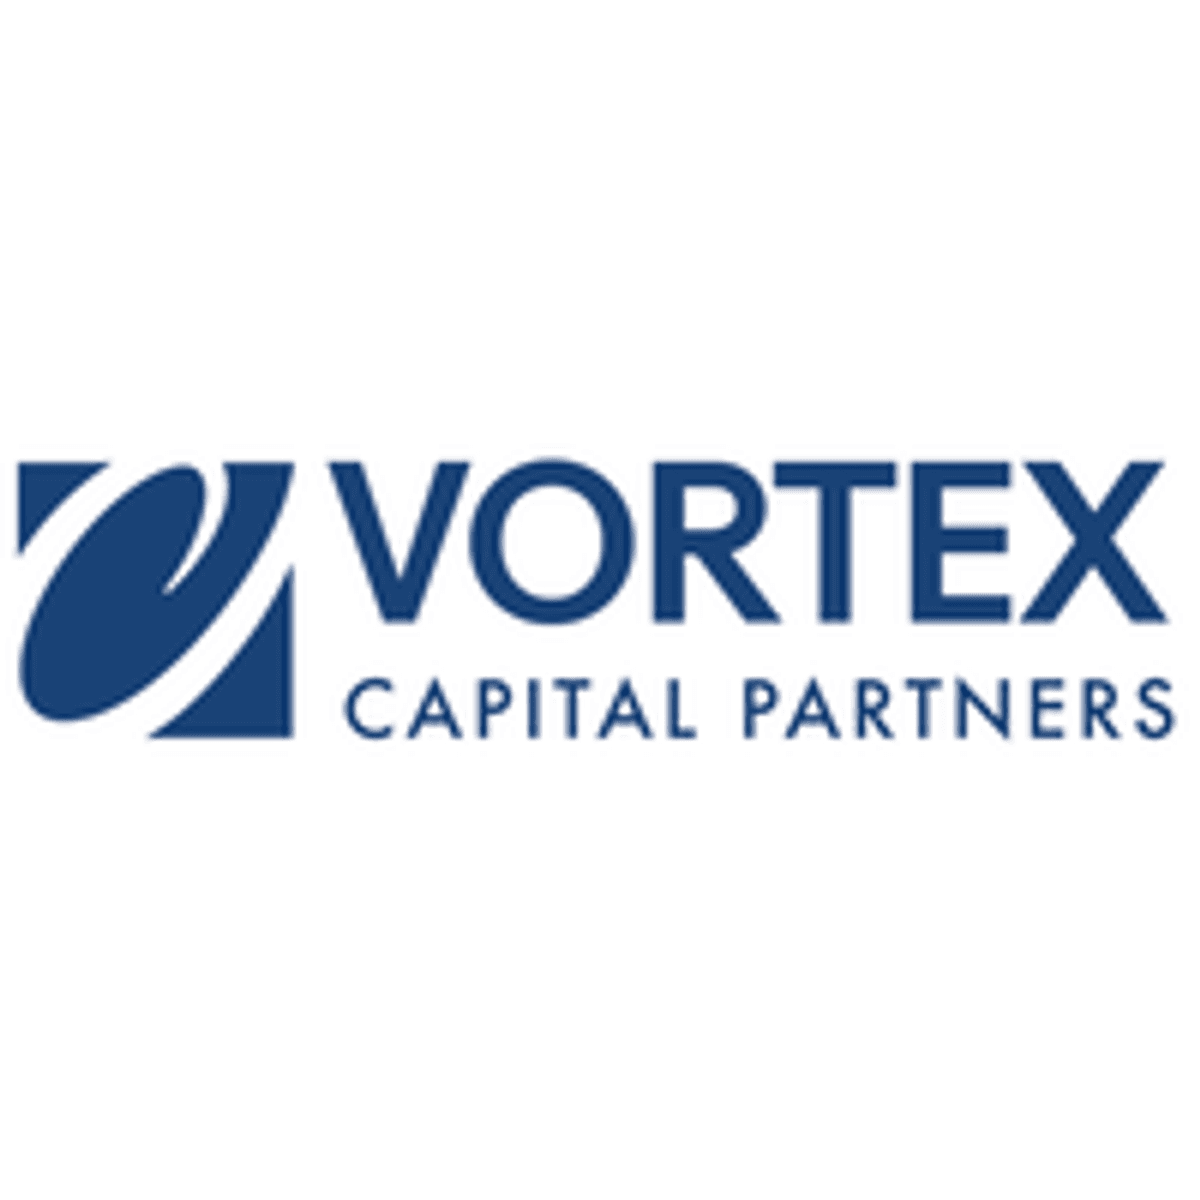 Vortex haalt 75 miljoen euro op voor nieuw techfonds image